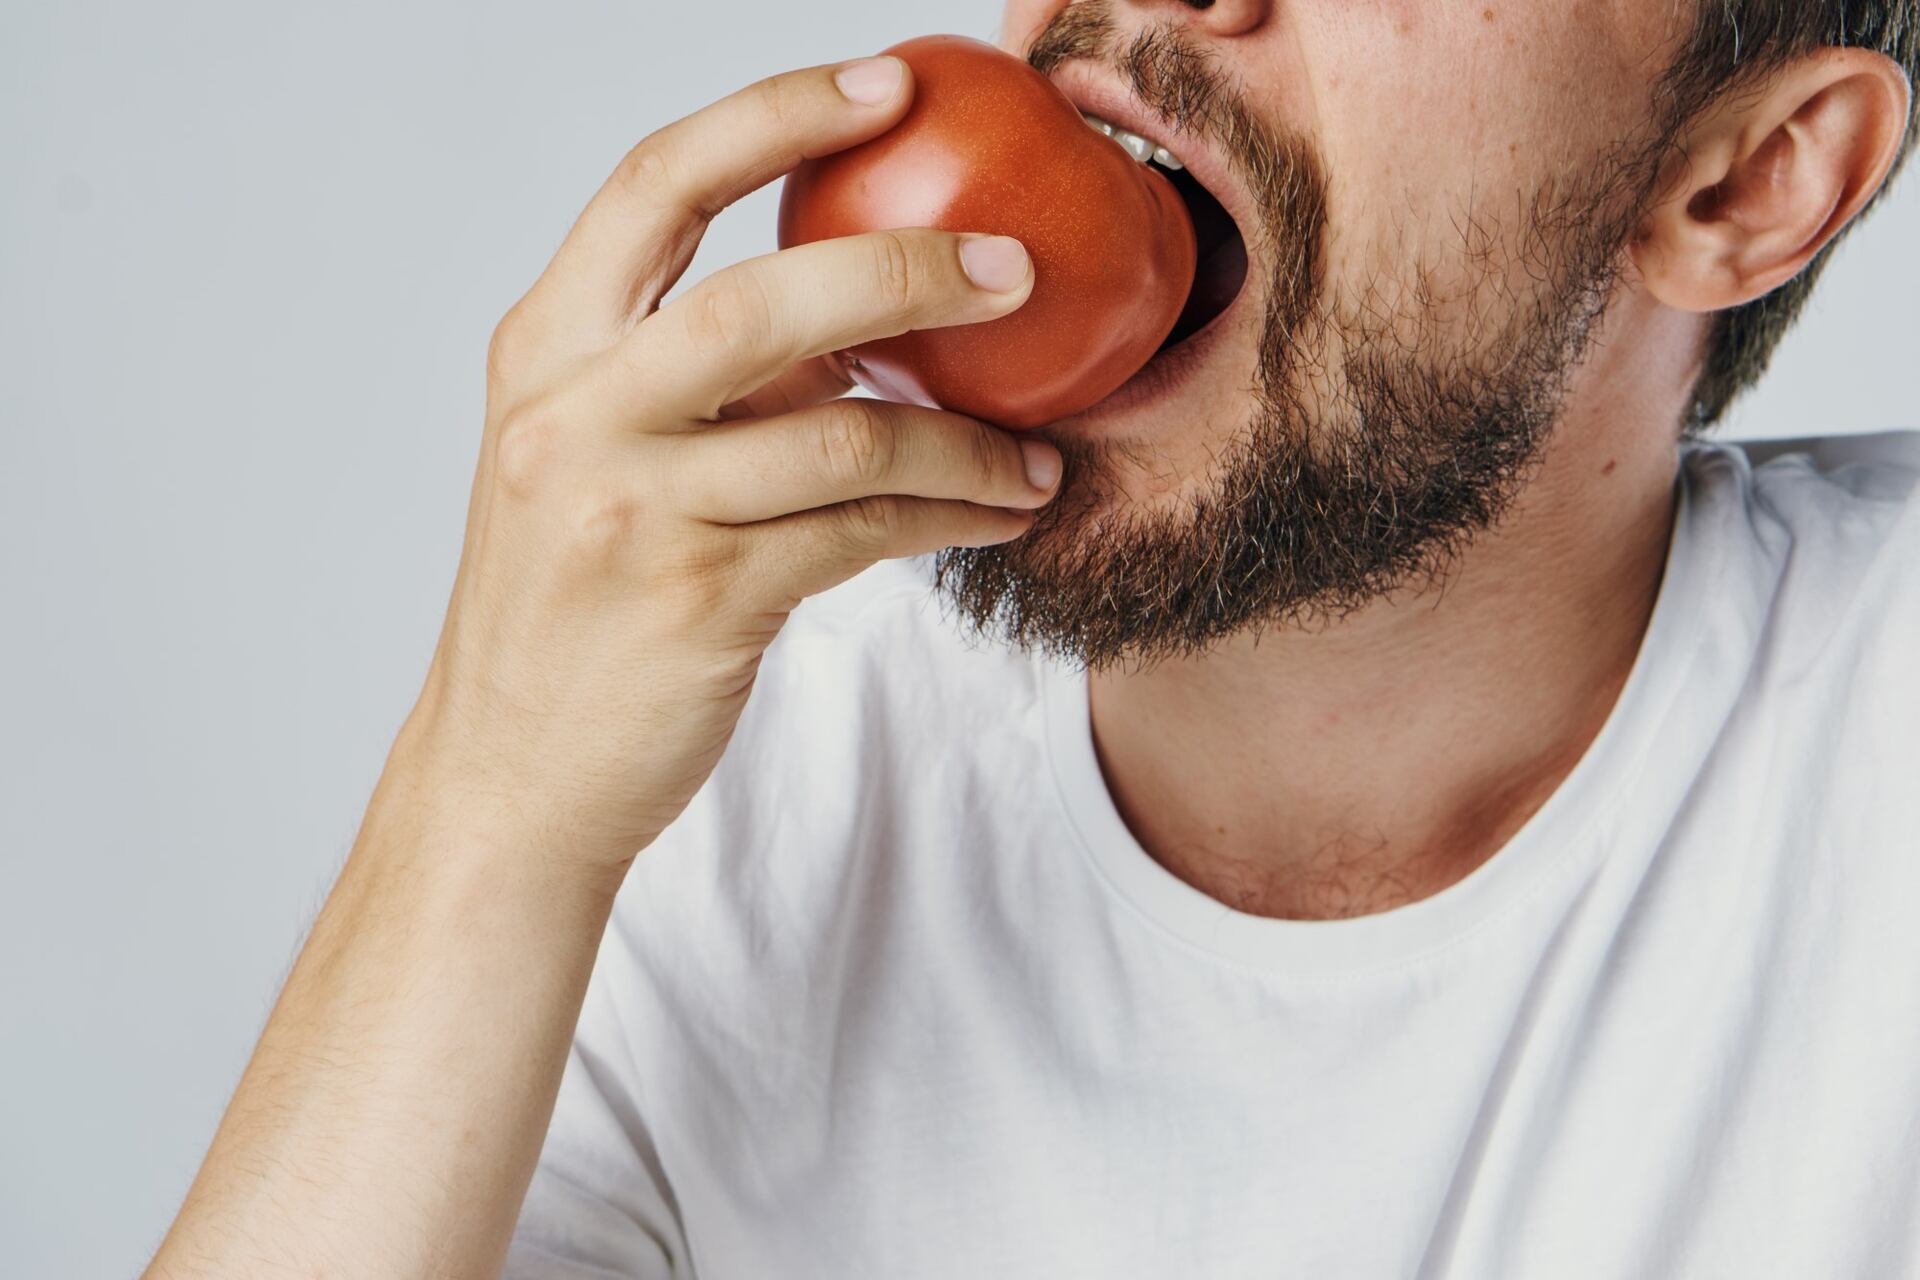 El tomate, la plata y el chocolate pueden ser enemigos de la alimentación de algunas personas